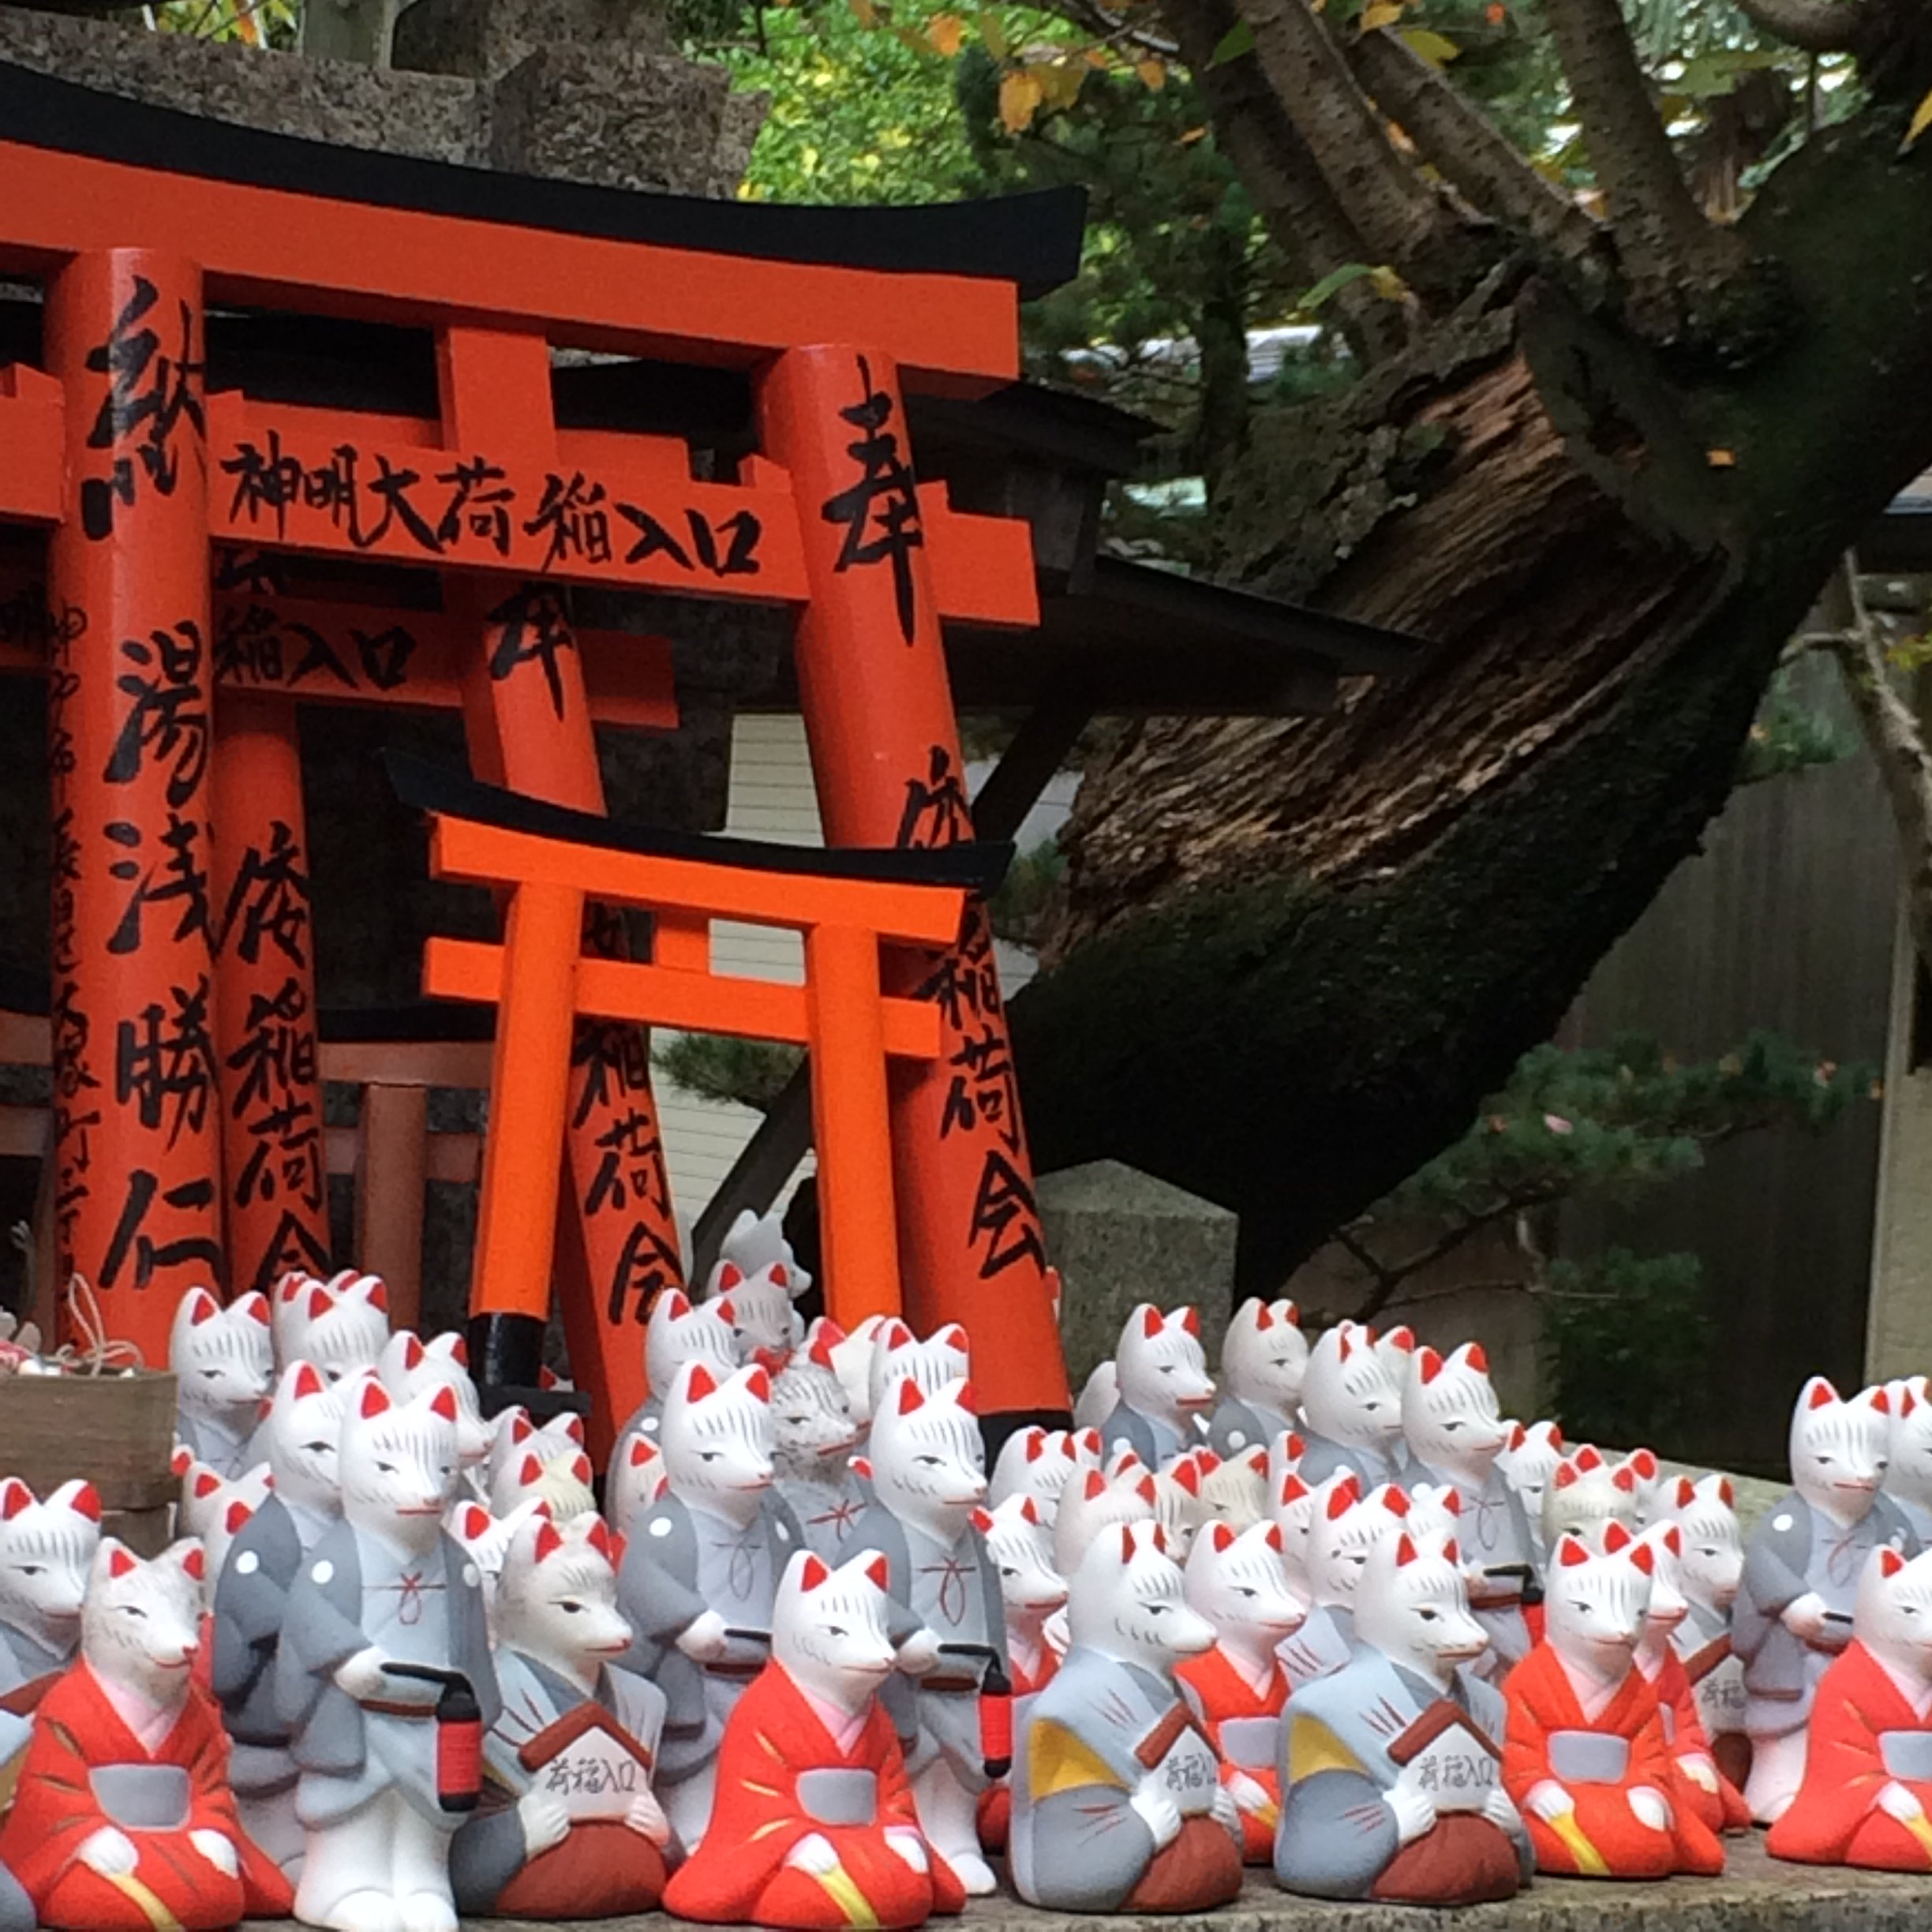 遨游大师在twitter 上 关于狐仙 日本专门有一种信仰 叫做稻荷信仰 所崇拜的神灵就是 稻荷 也就是狐 仙 大多数的小型神社中 都会供有稻荷的神龛 有些甚至还有狸猫的神龛